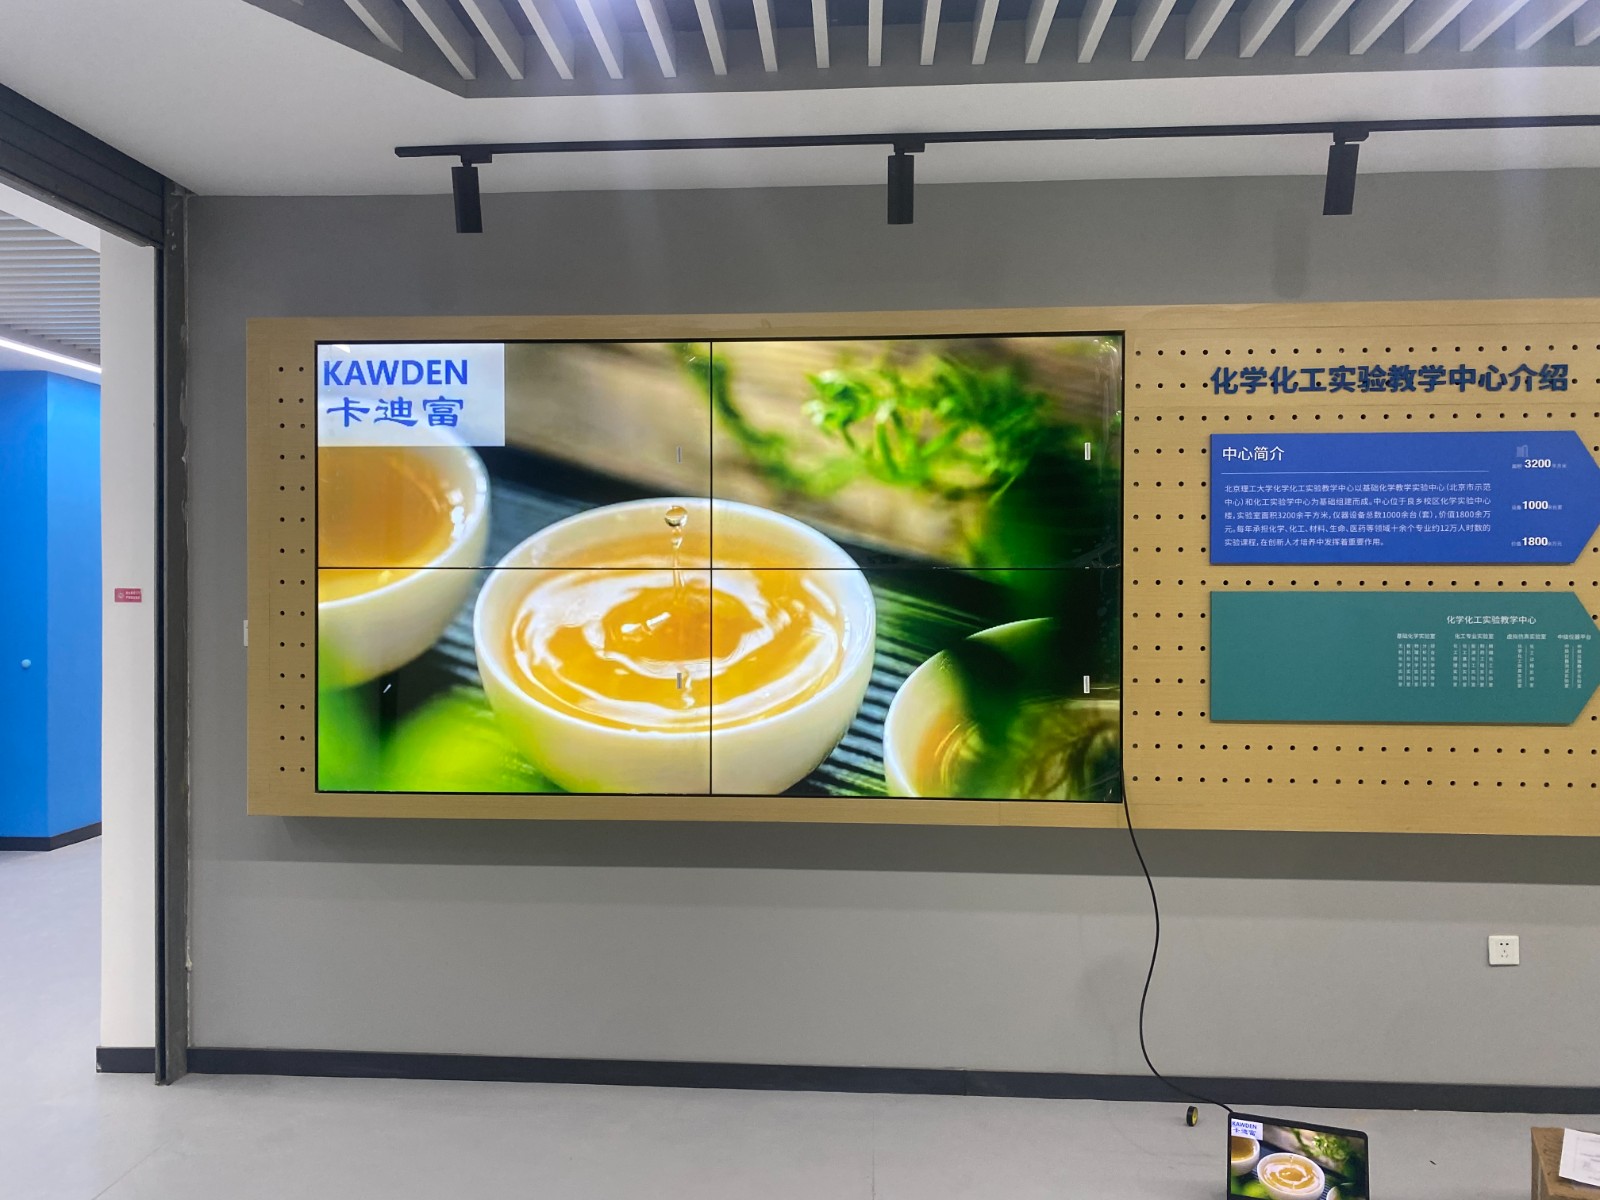 北京市丰台区某印刷公司项目55寸ray竞技app
案例图片